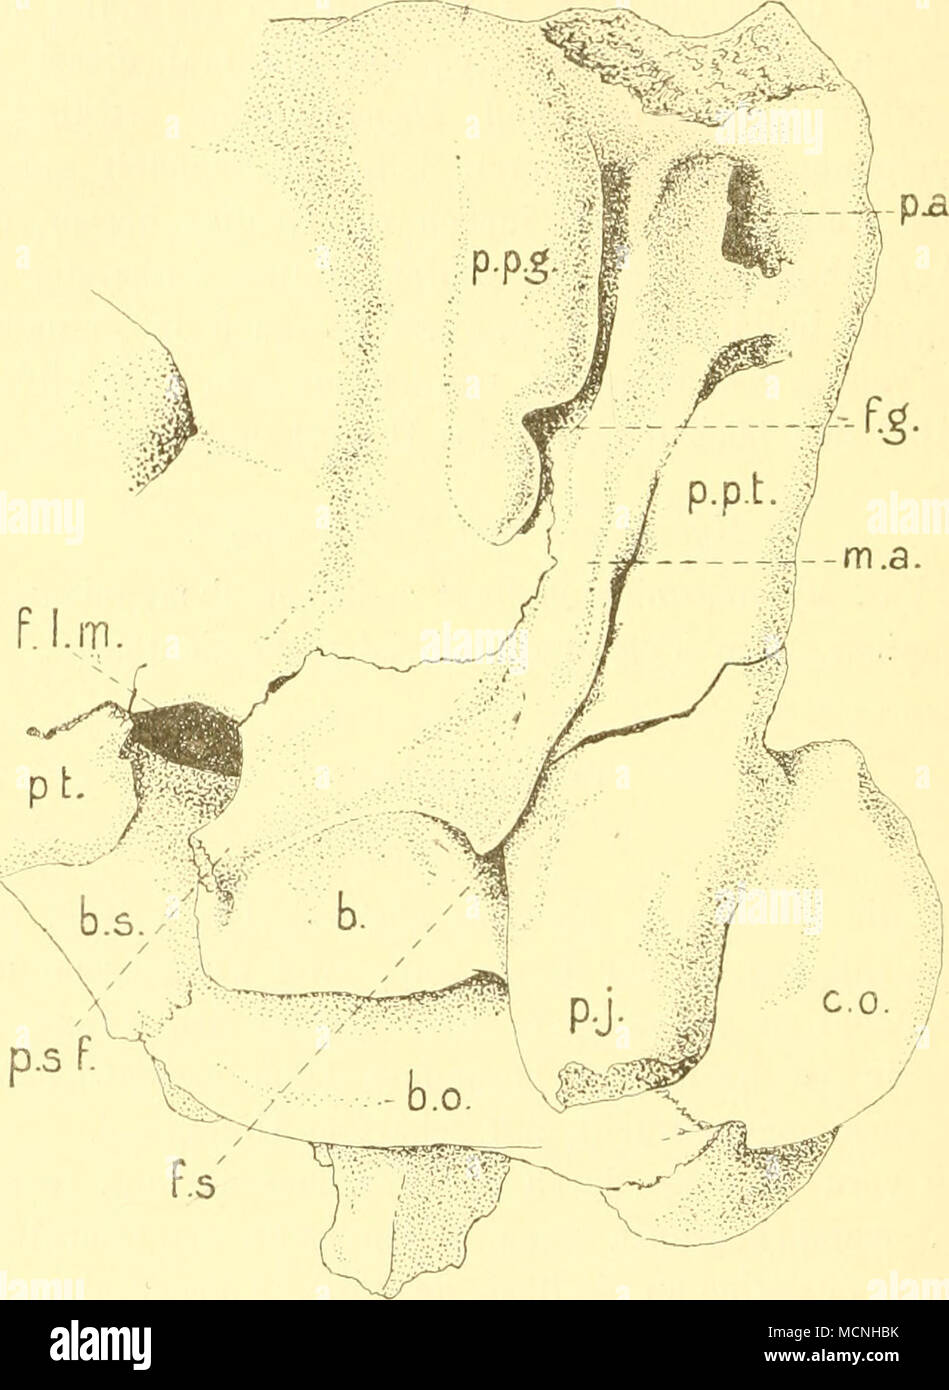 . Toxodon plaiensia Owen, jiiv. (aus dem Museum zu Kopenhagen), von der Seite und etwas von unten gesellen; der obere Teil des Squamosum ist abgebrochen, b. Bulla; b.o. Basioccipitale; h.s. Basi- sphenoid; c.o. Condylus occipit.; f.g. For. postglenoideum ; f.l.m. For. lacerum ant.; f.s. For. stylo- mast.; m.a. Meatus acust. ext.; p.a. Porus acust. ext.; p.j. Proc. paroccipit.; p.p.g-, p.p.i. Proc. post- glenoideus nud posttymp.; p.sf. Proc. styliformis; pt. Pterygoid. dem Namen »styloid process« auch durch Owen (1840) beschrieben und abgebildet und ist auch deutlich sichtbar auf Taf. II und IV Stock Photo